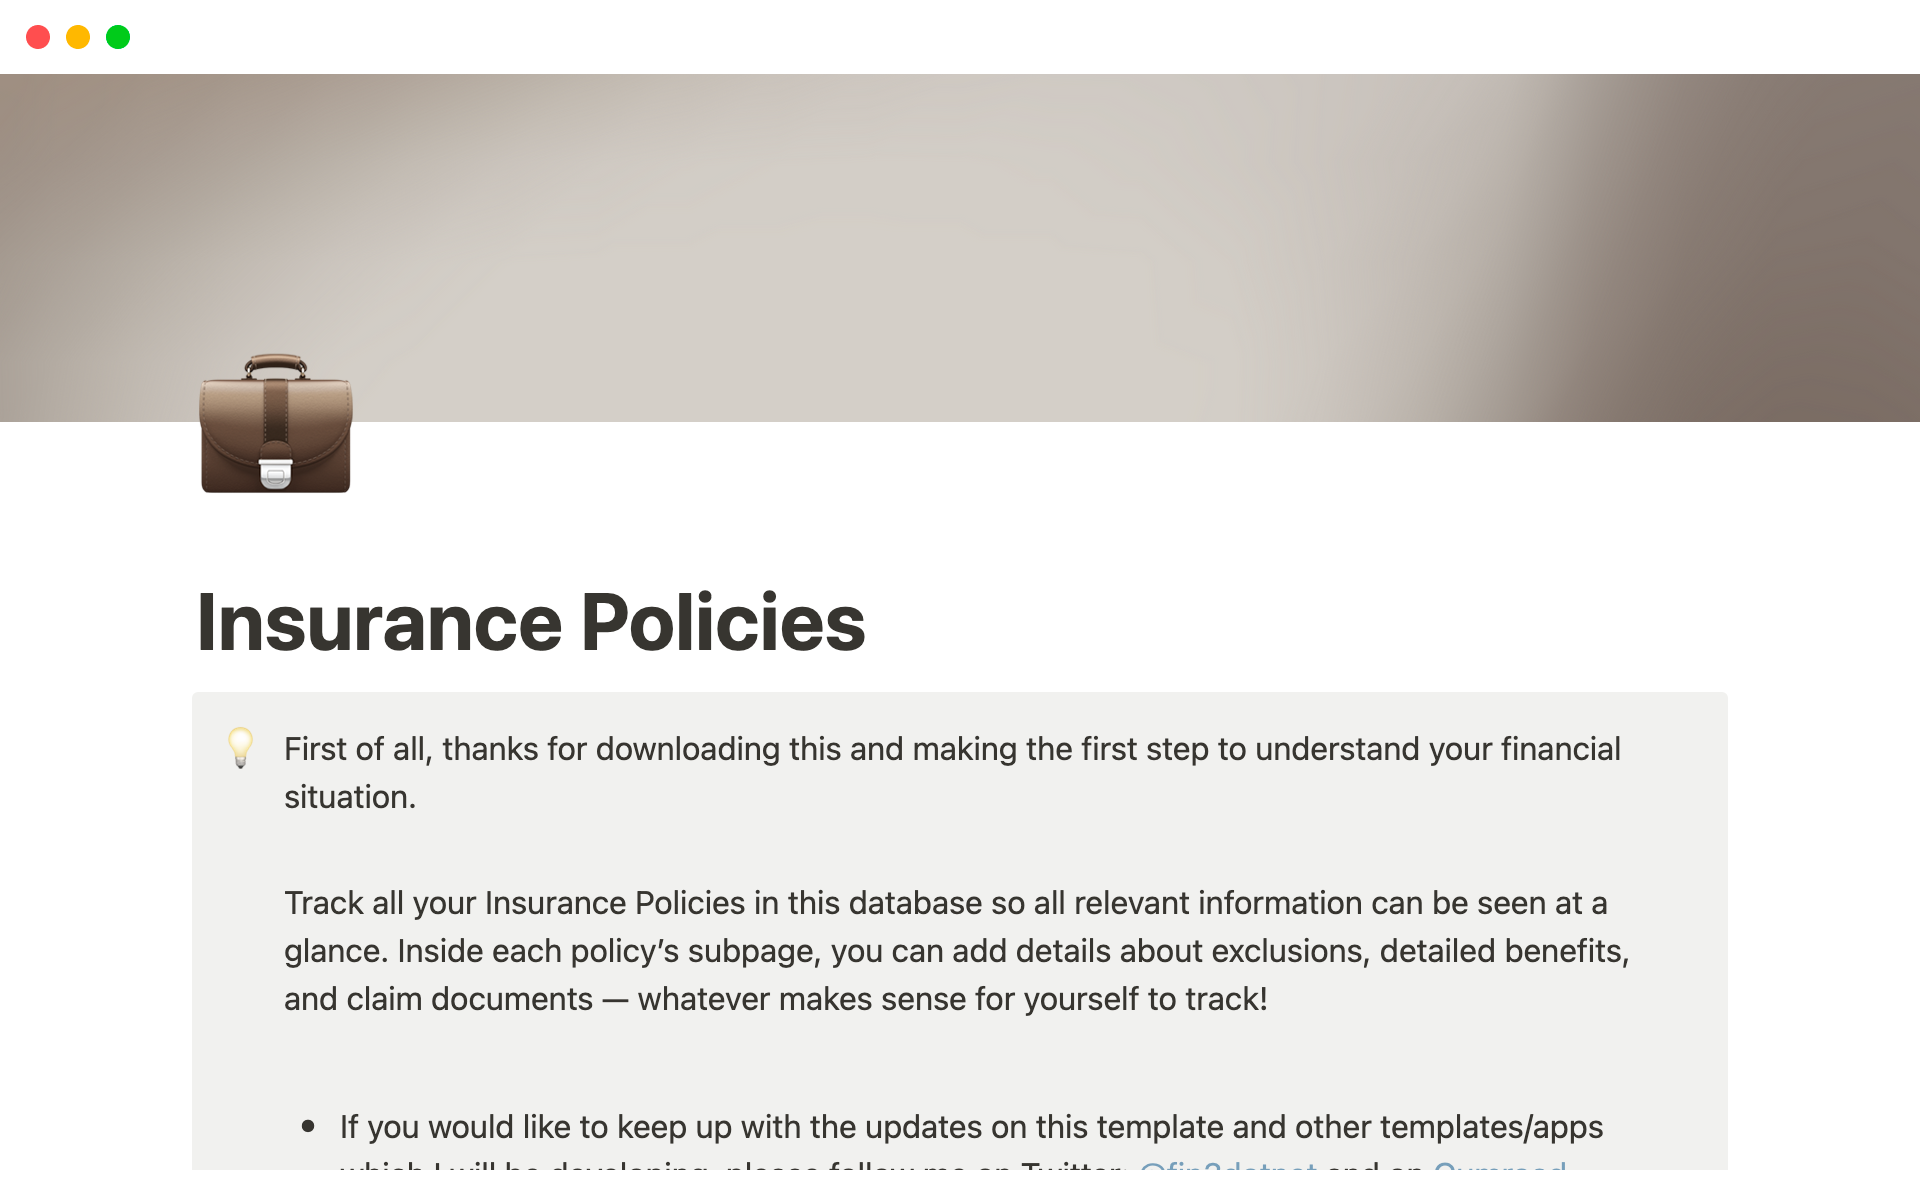 Uma prévia do modelo para Insurance Policy Tracker